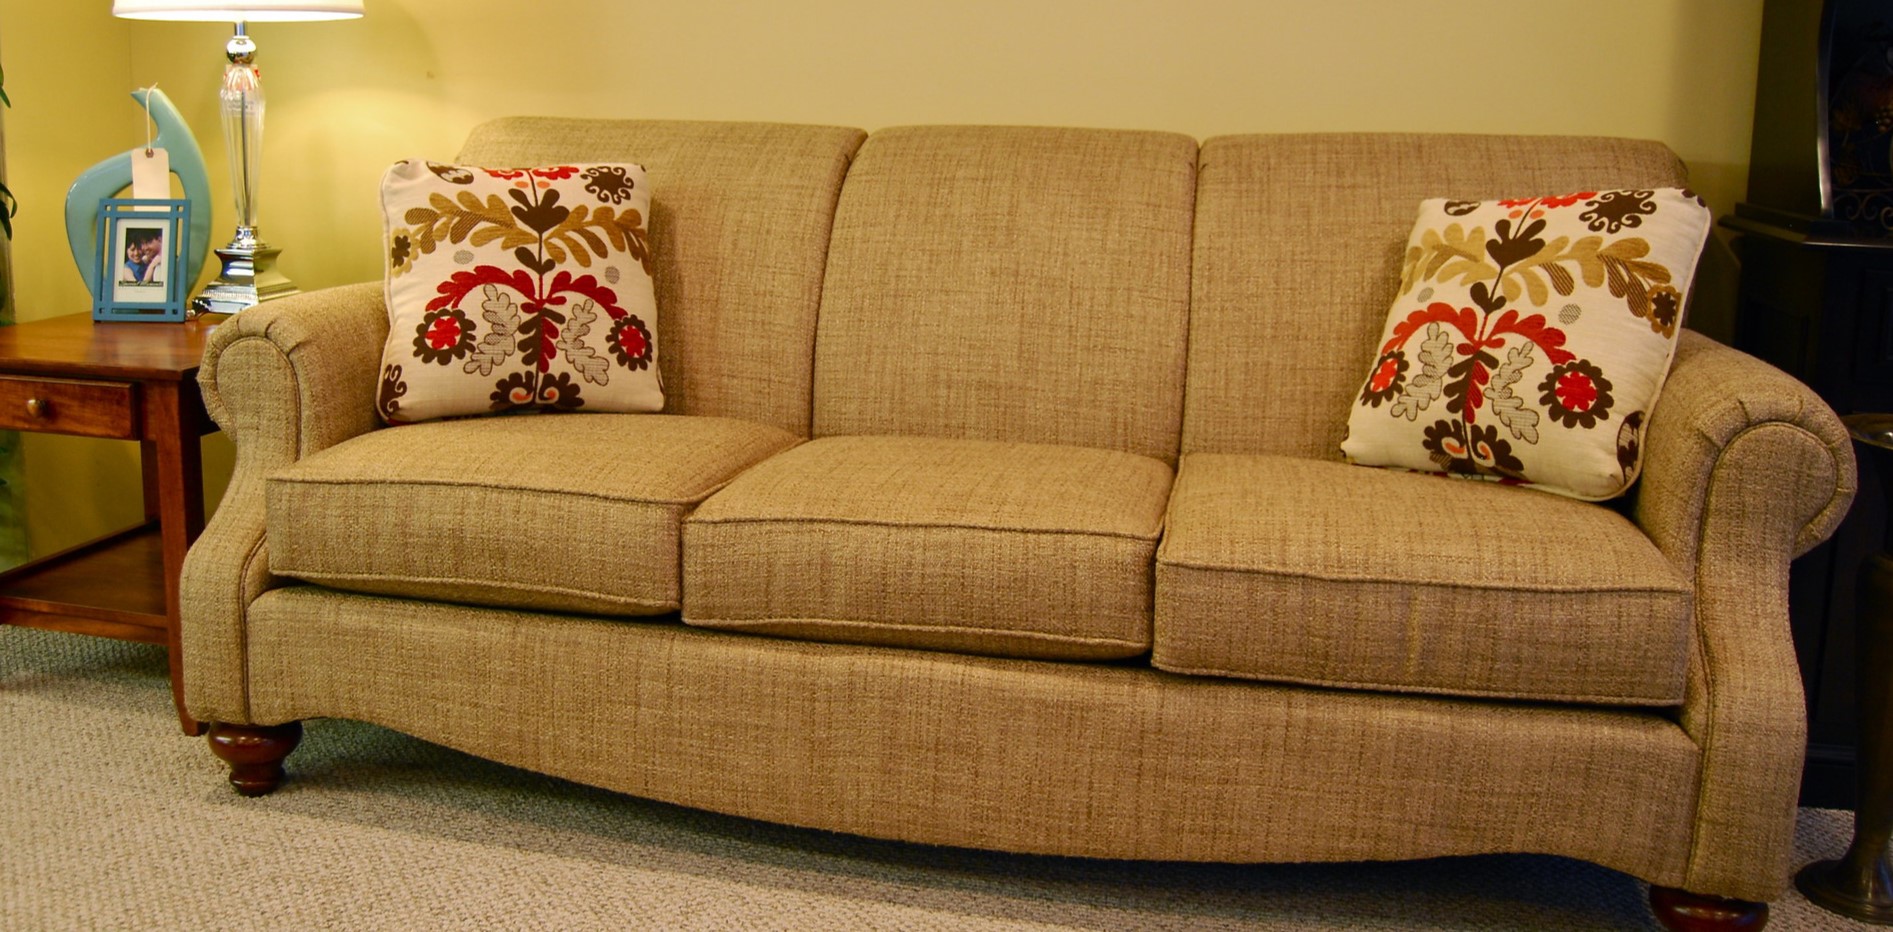 Однотонный гобеленовый диван можно дополнить подушками с рисунком